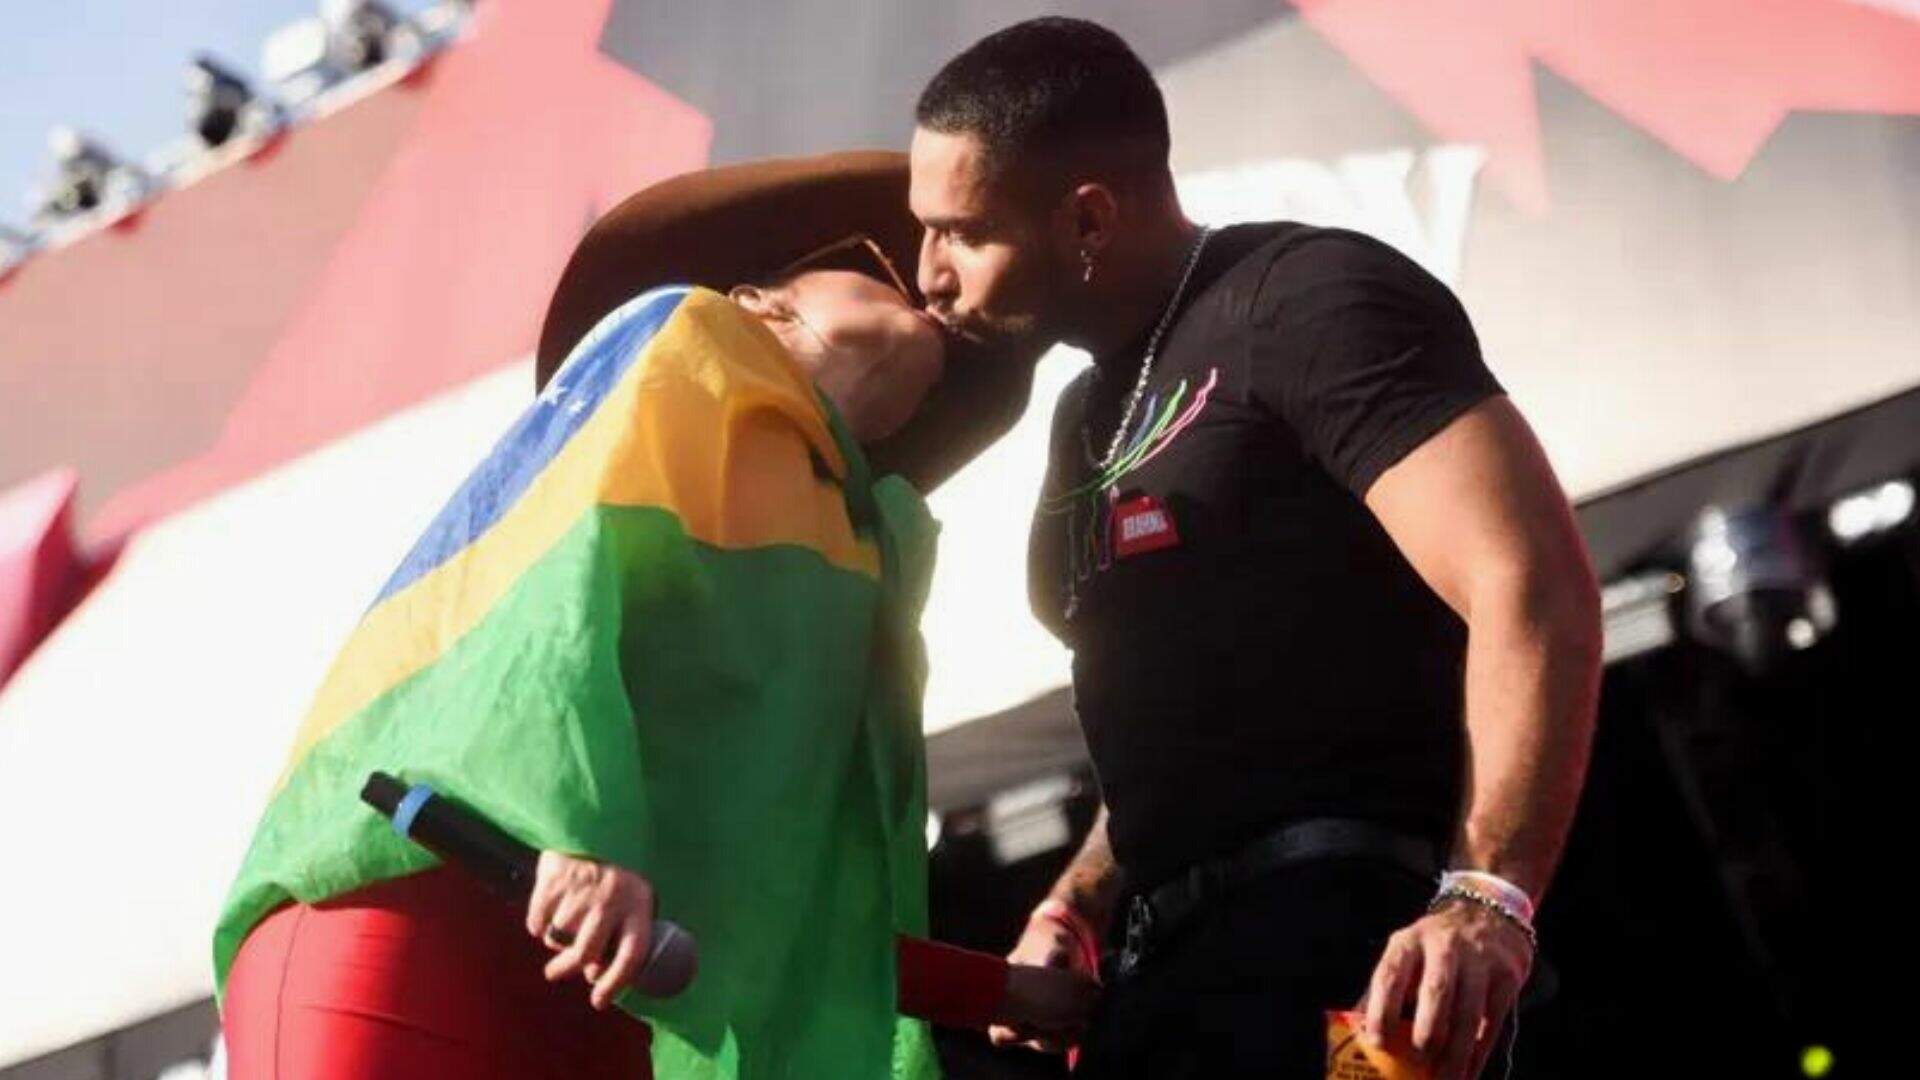 Voltaram? Bil Araújo e Maraisa tem ‘recaída’ e se beijam durante show - Metropolitana FM